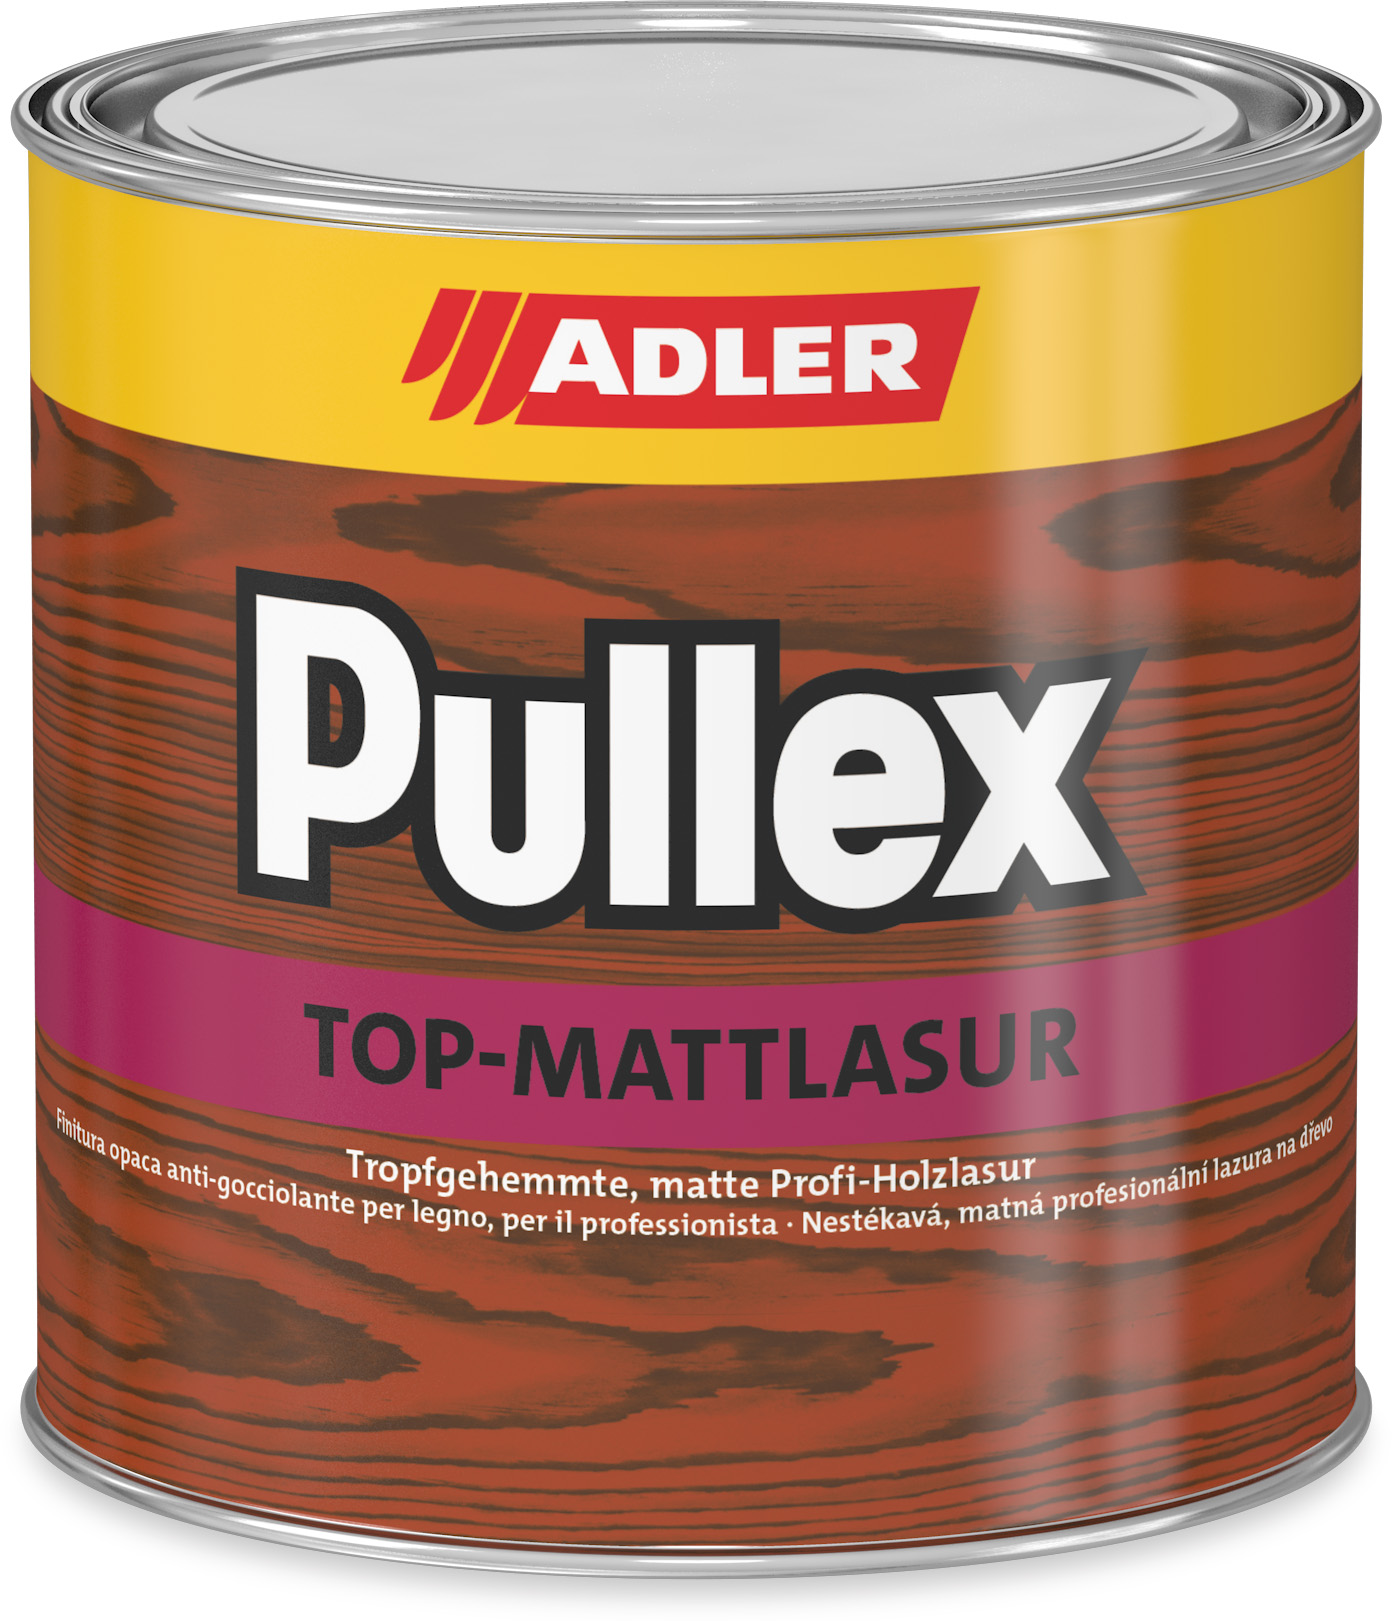 ADLER PULLEX TOP-MATT LASUR - Nestekavá tenkovrstvá lazúra eiche - dub (pullex) 5 L